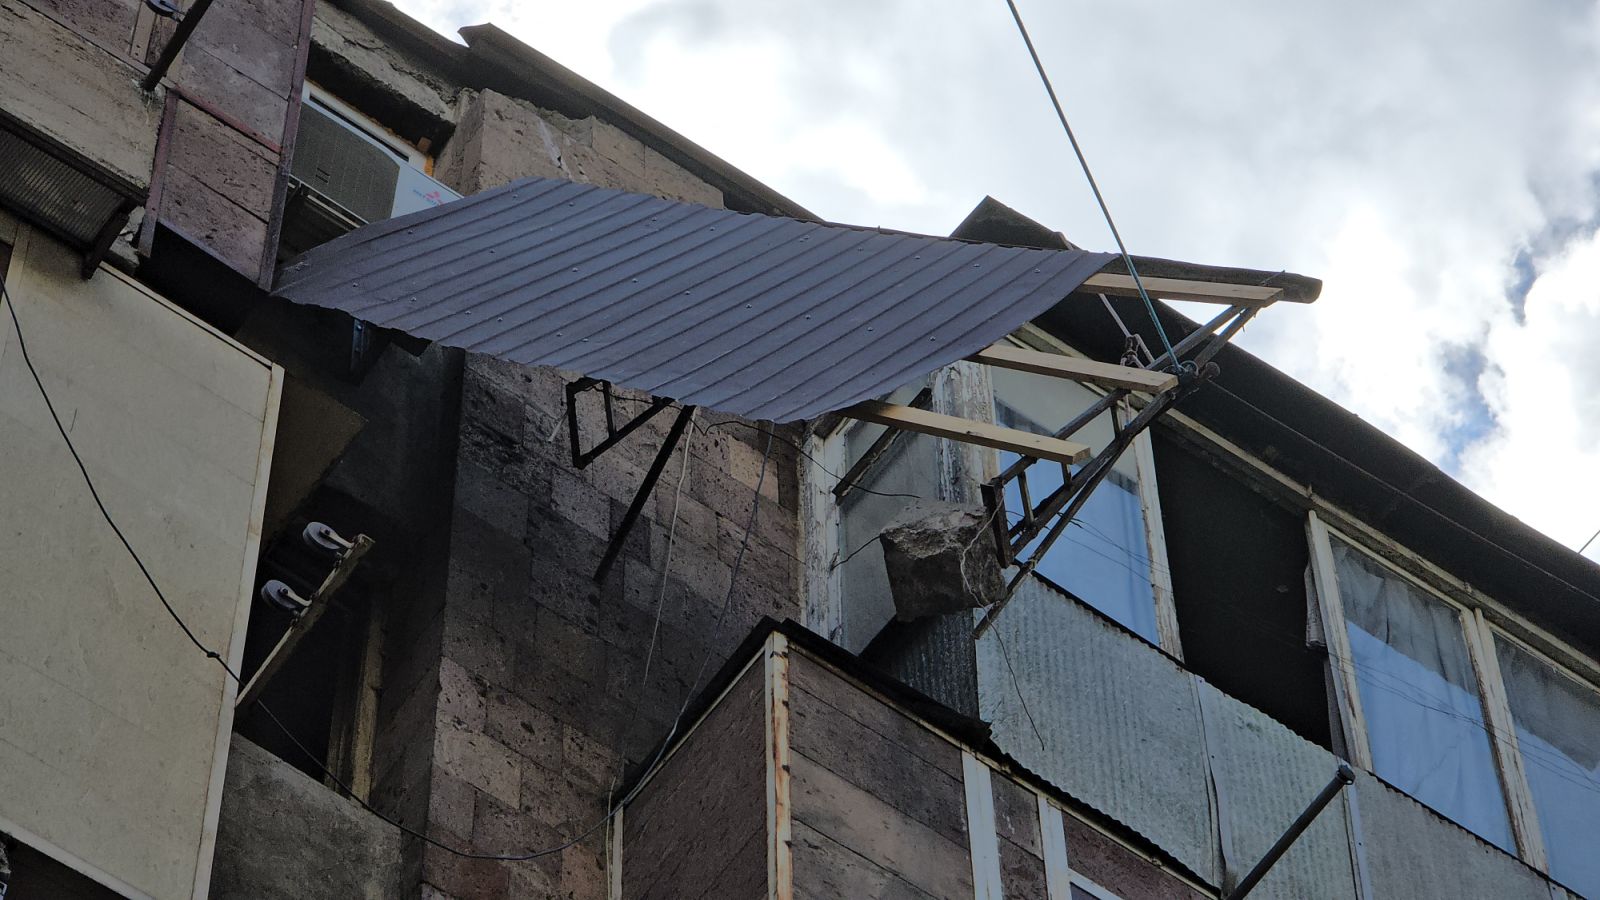 Երևանյան շենքերից մեկի տանիքից թուլացել և կախվել են կառուցատարրեր և մետաղյա թիթեղը. օգնել են փրկարարները